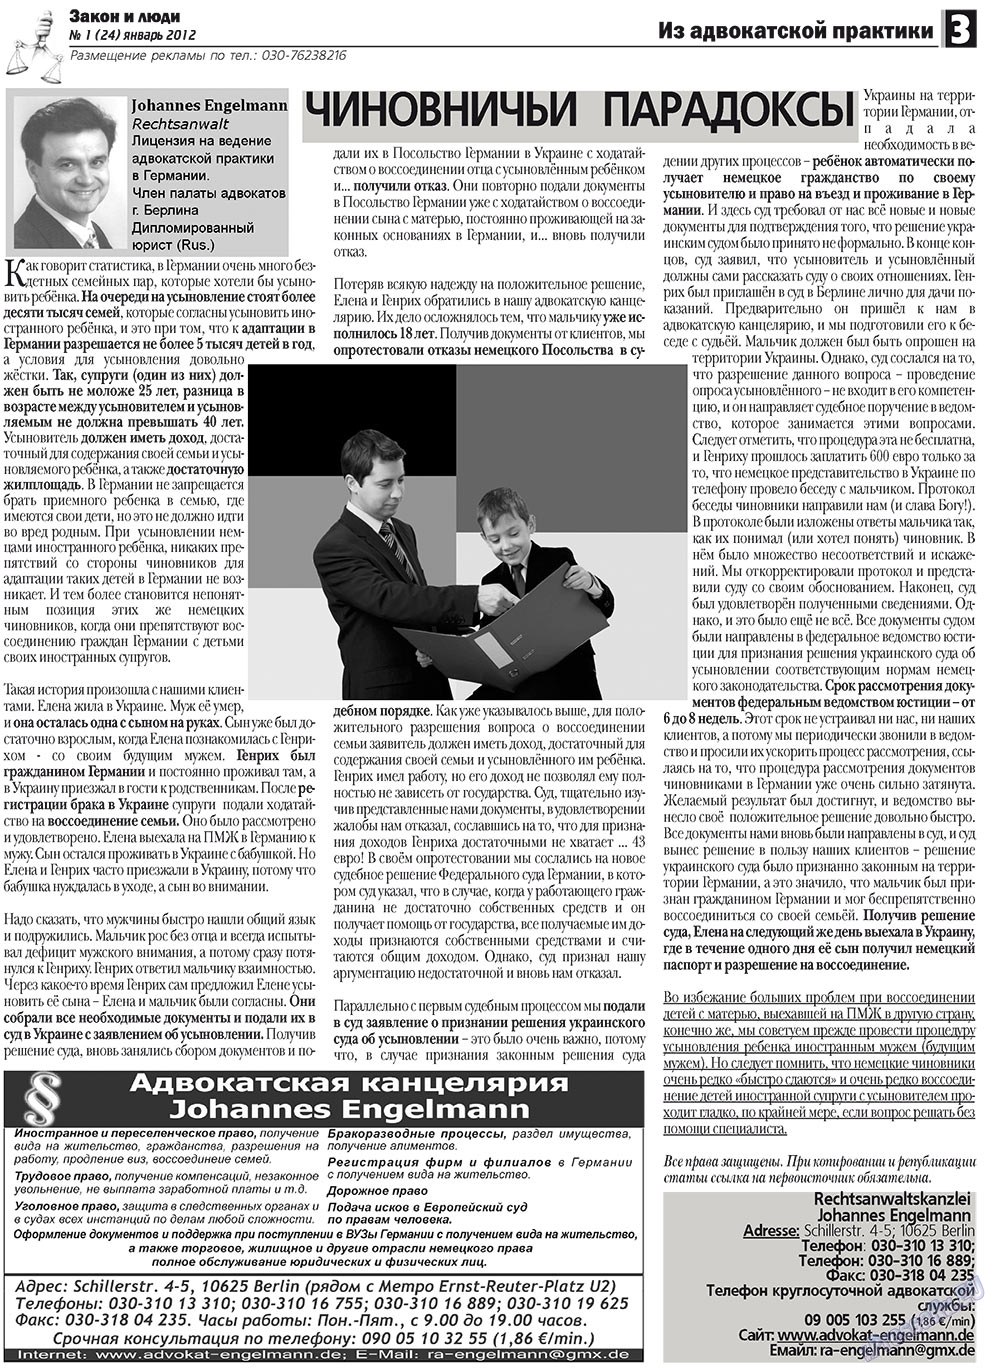 Закон и люди, газета. 2012 №1 стр.3